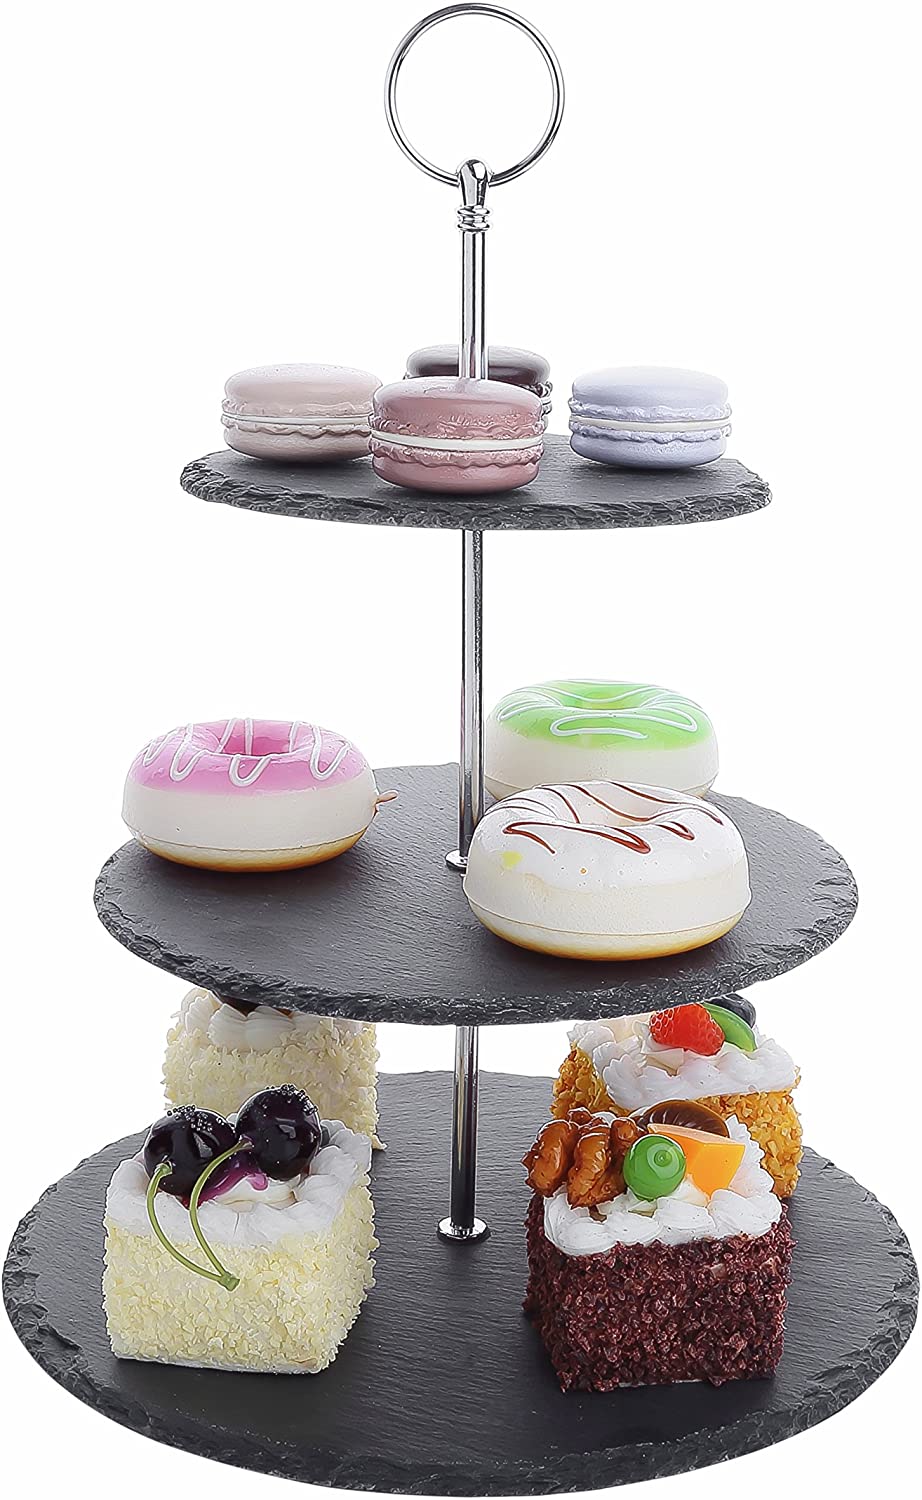 Malacasa Sweet.Time Series 3-Tier Cake Stand, Slate Cake Stand Set, A